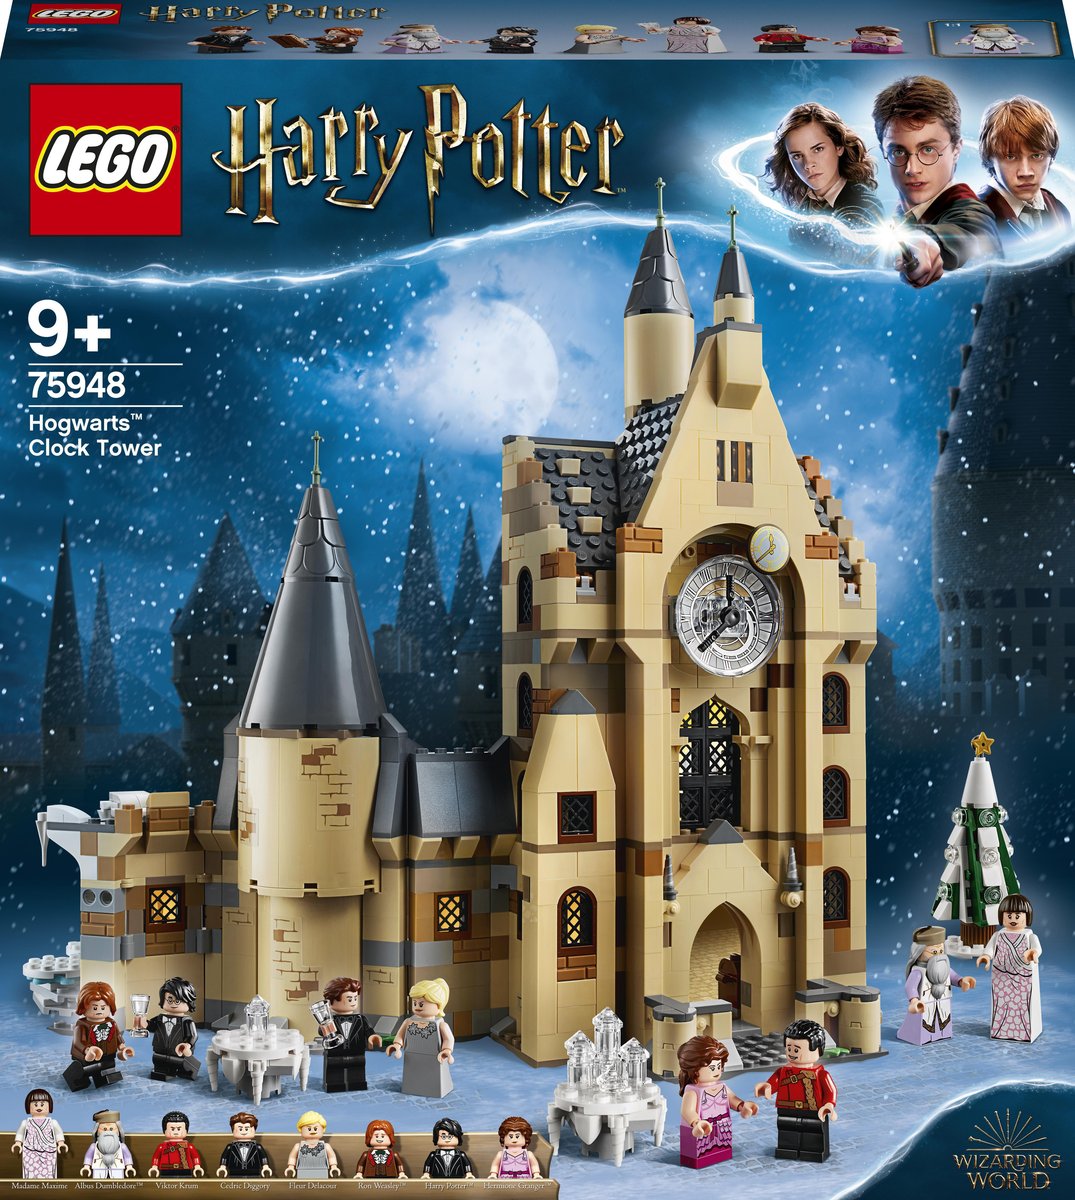 LEGO Harry Potter Wieża zegarowa w Hogwarcie 75948